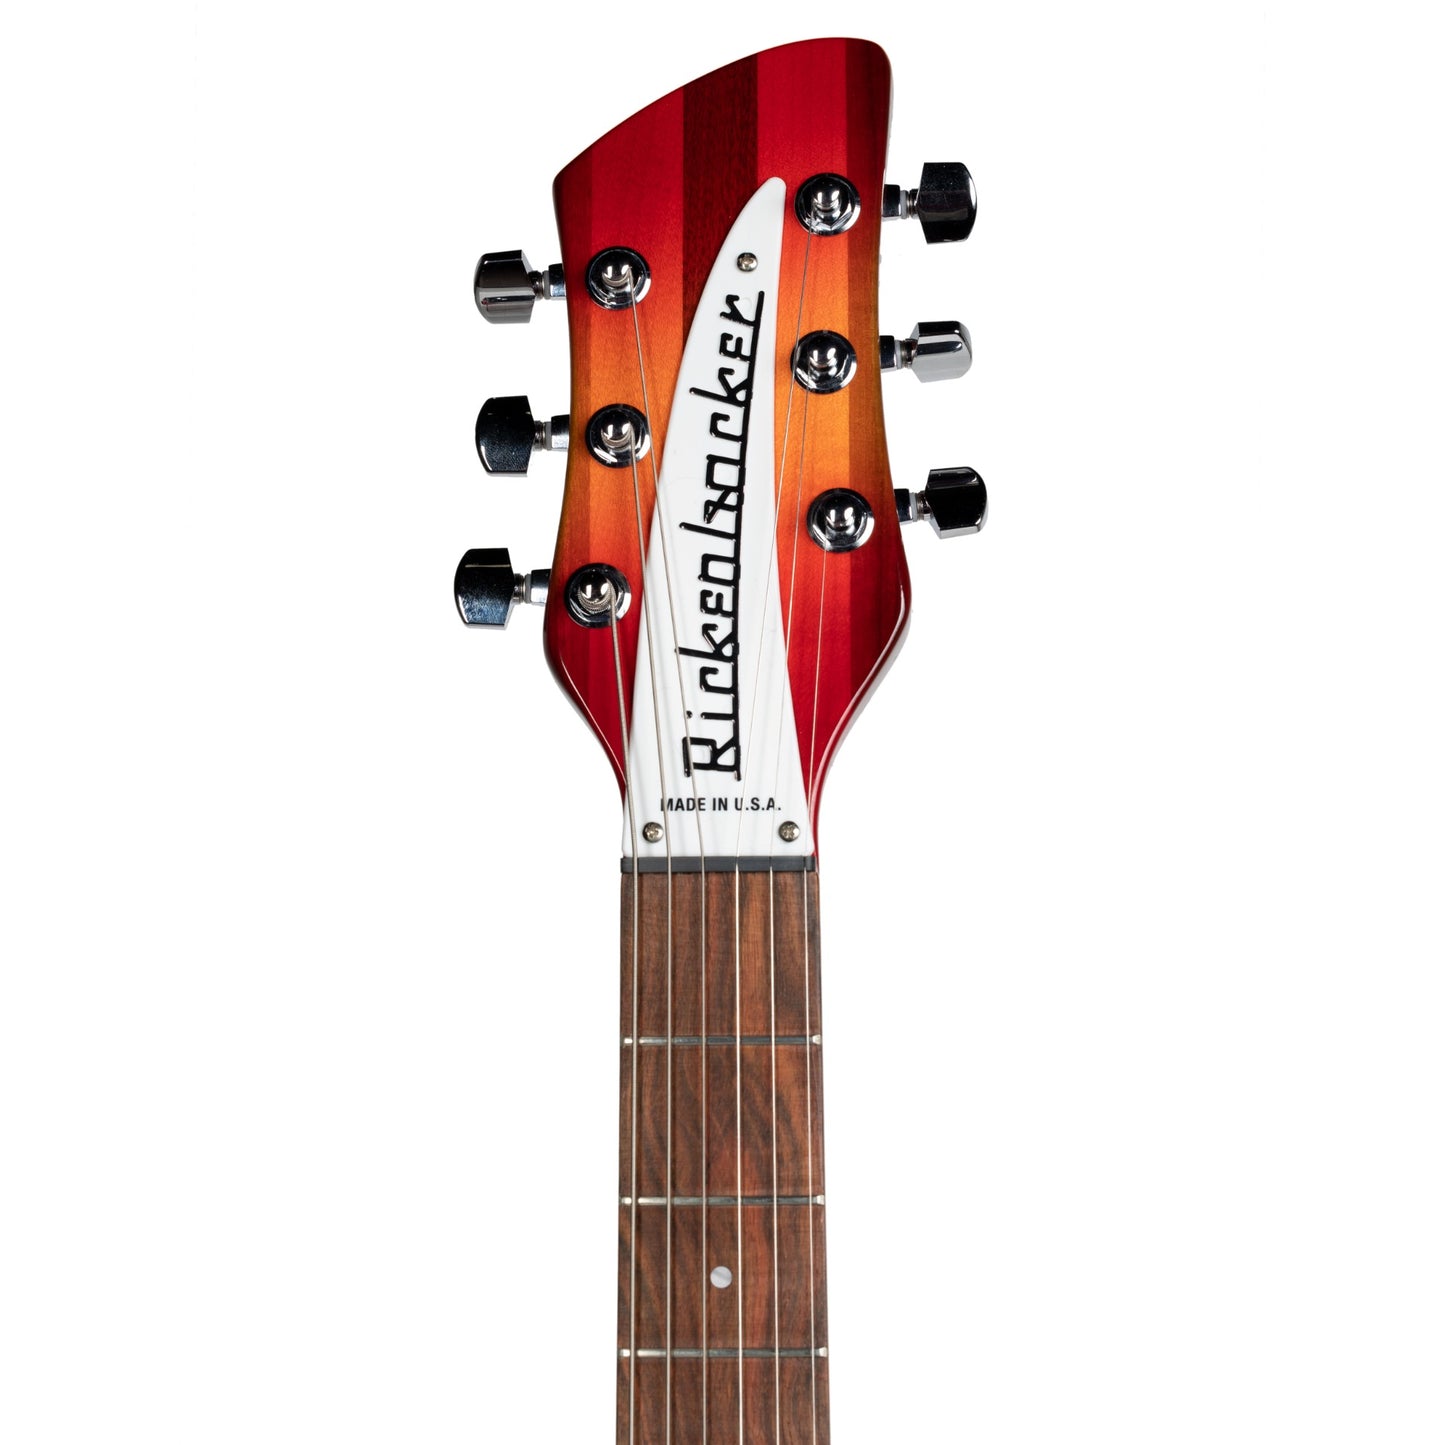 Rickenbacker 330 Electric Guitar - Fireglo